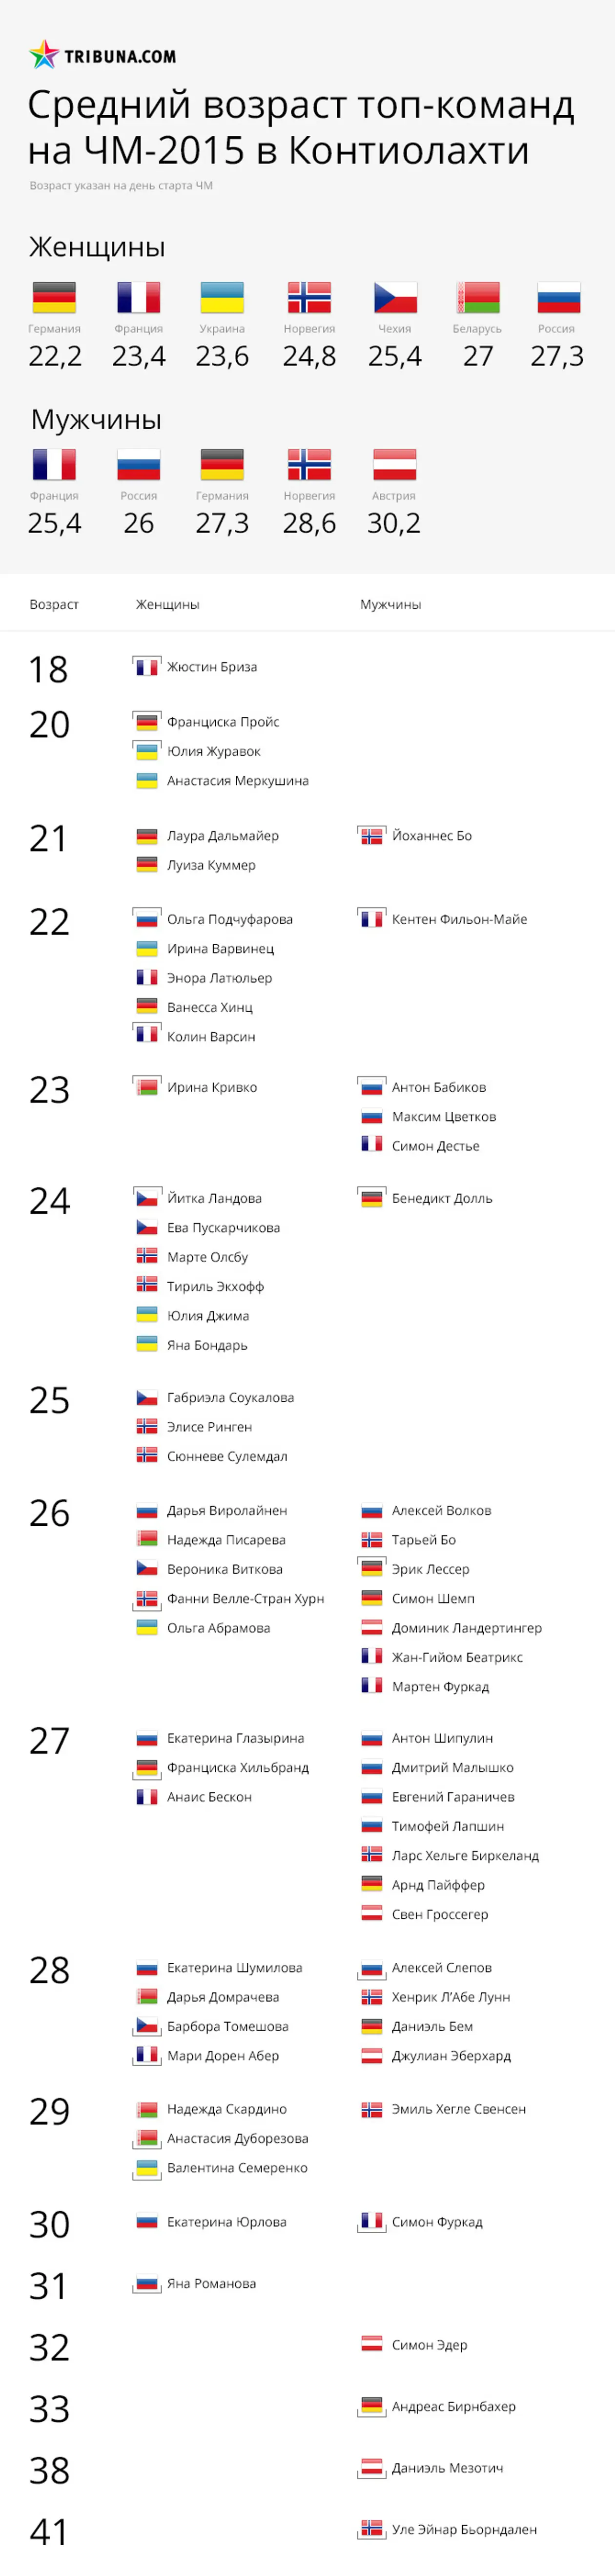 Женская сборная Украины – одна из самых молодых топ-команд ЧМ-2015